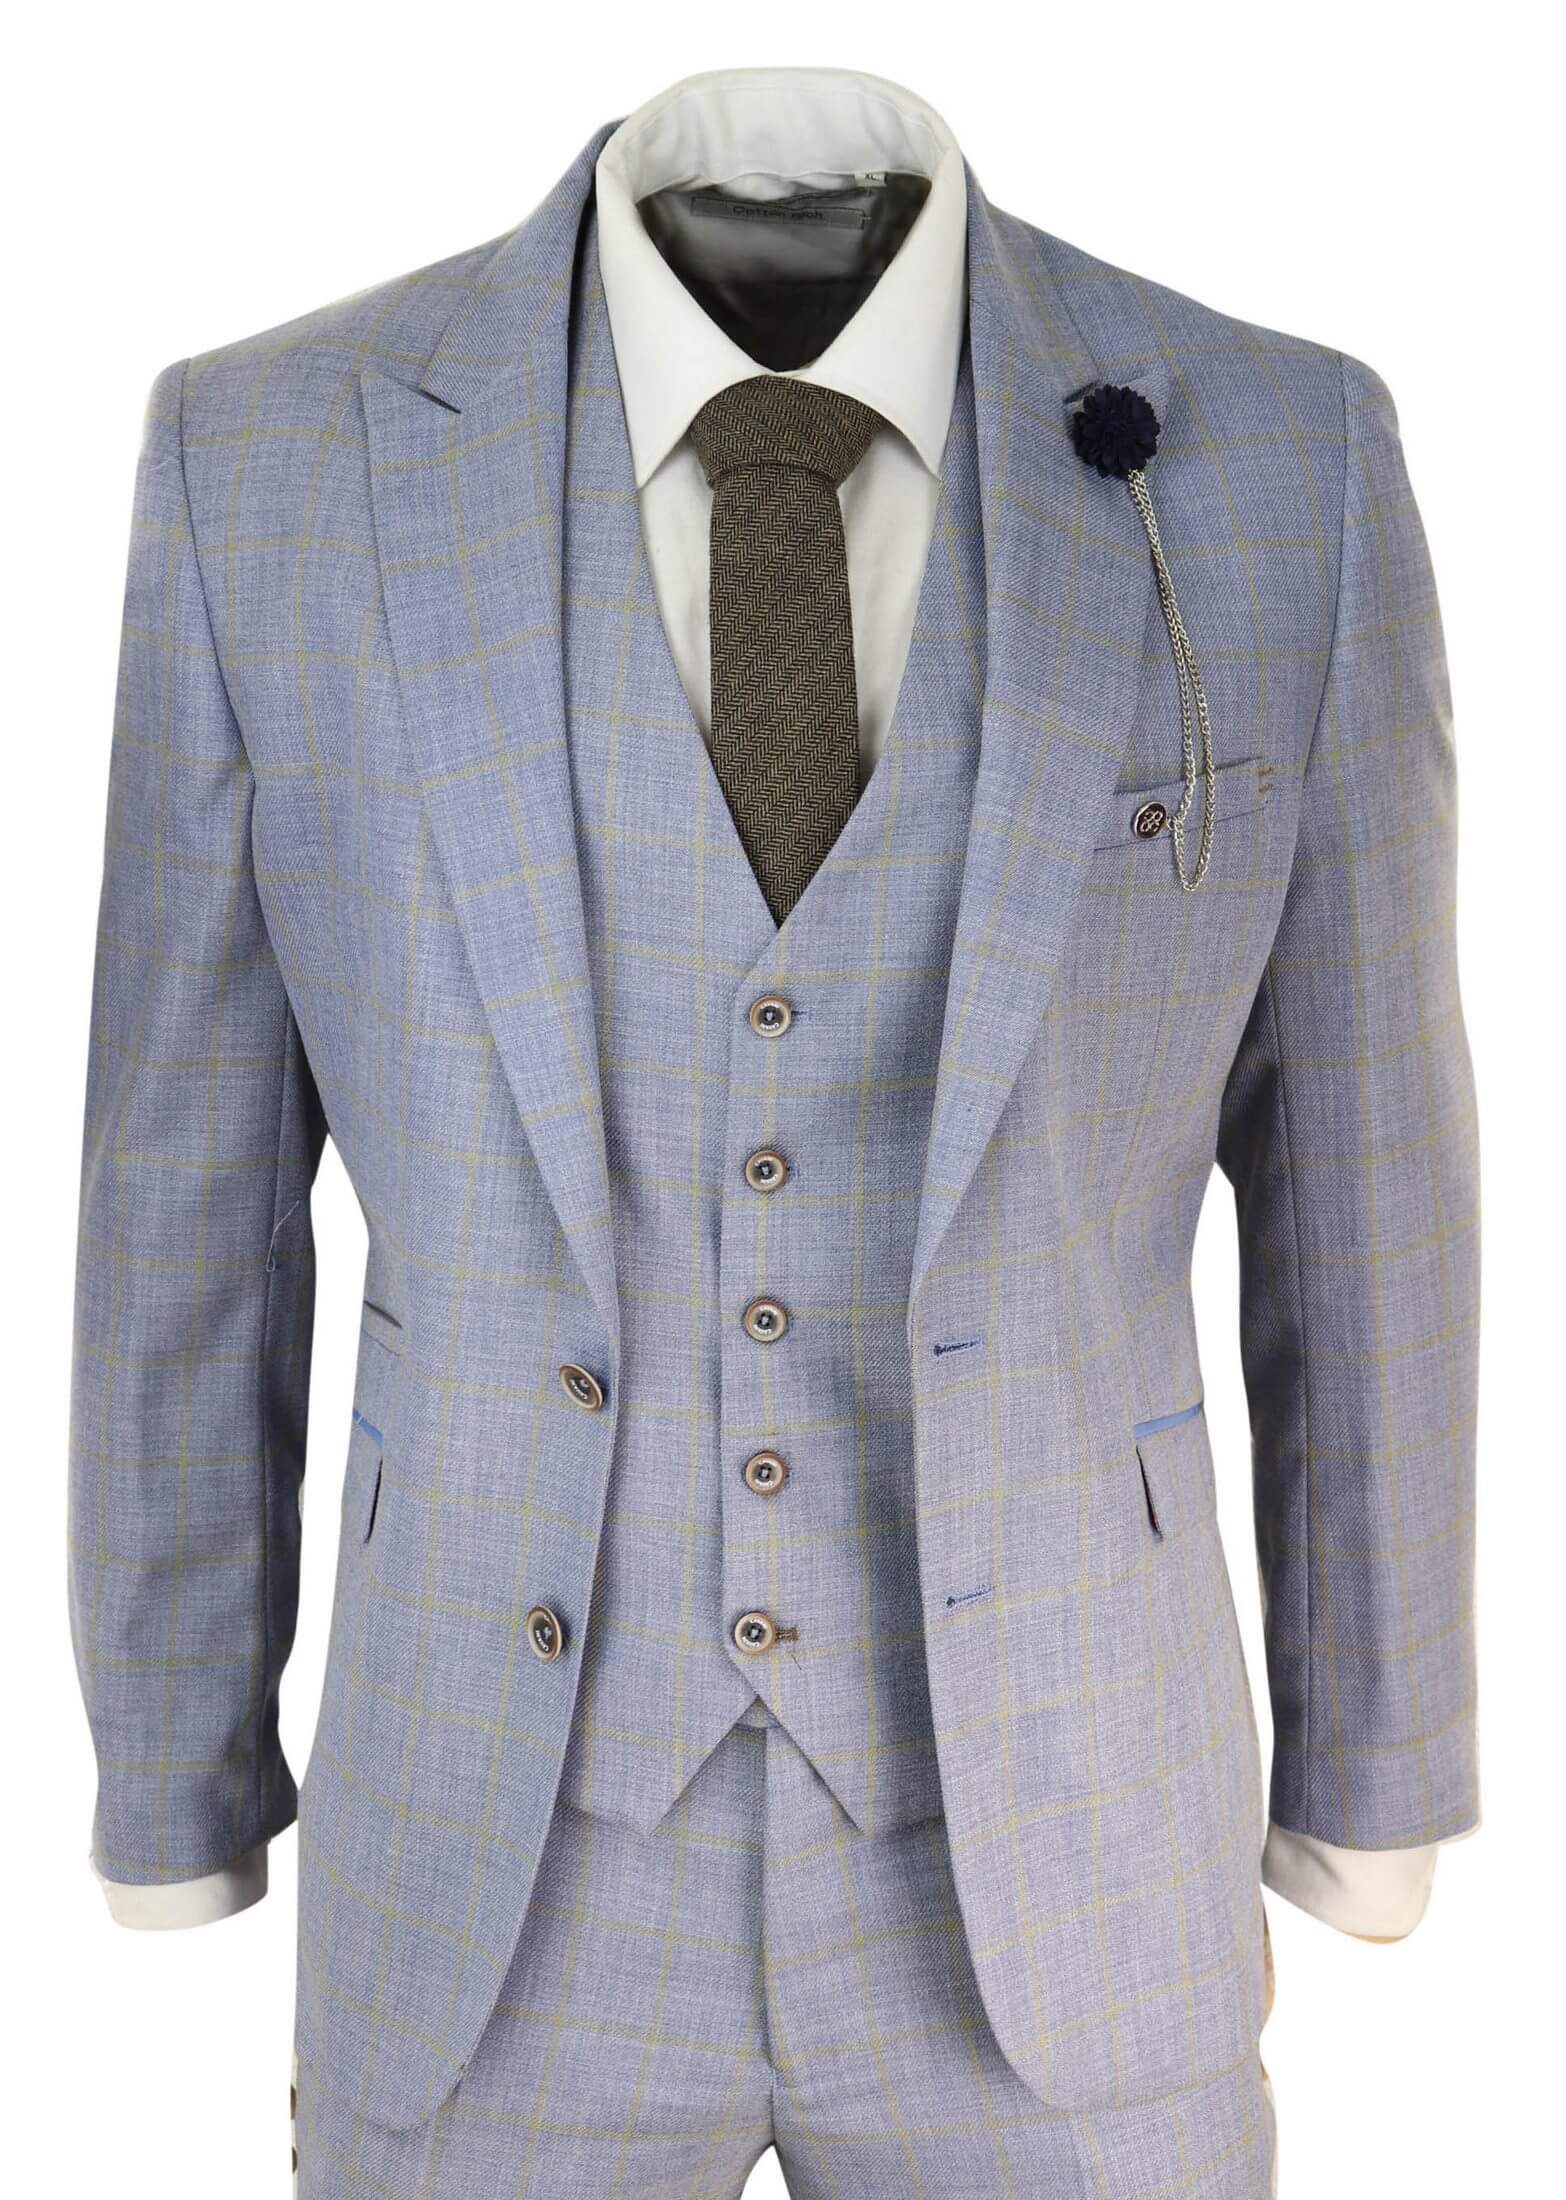 Mens Blue Check Light Summer Suit: Buy Online - Happy Gentleman